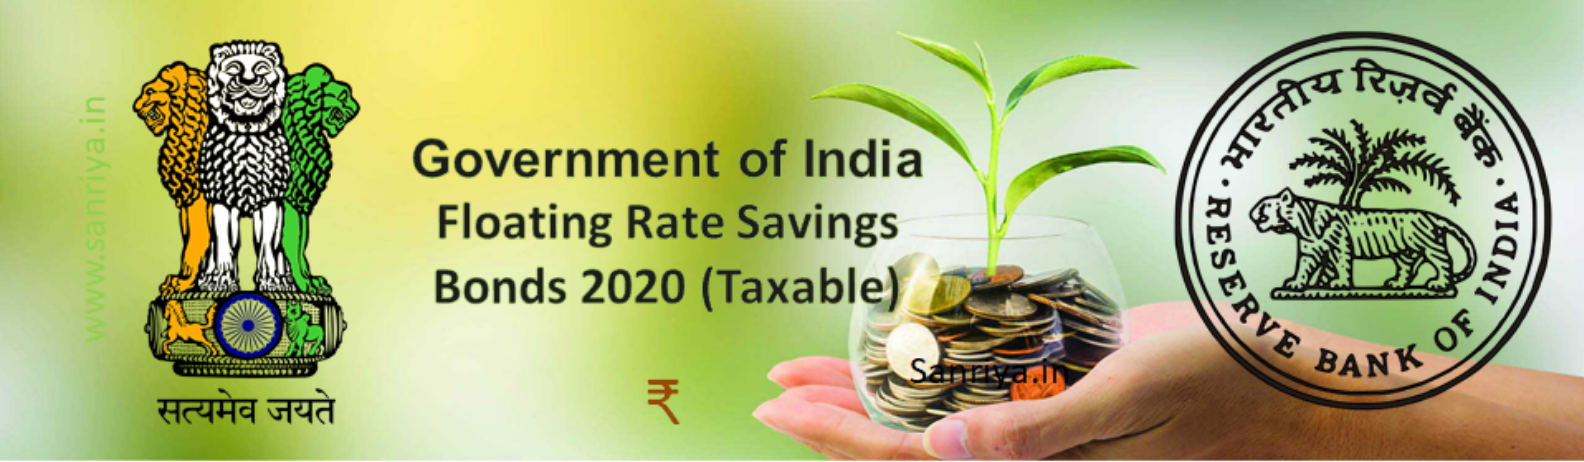 investing in govt bonds in india